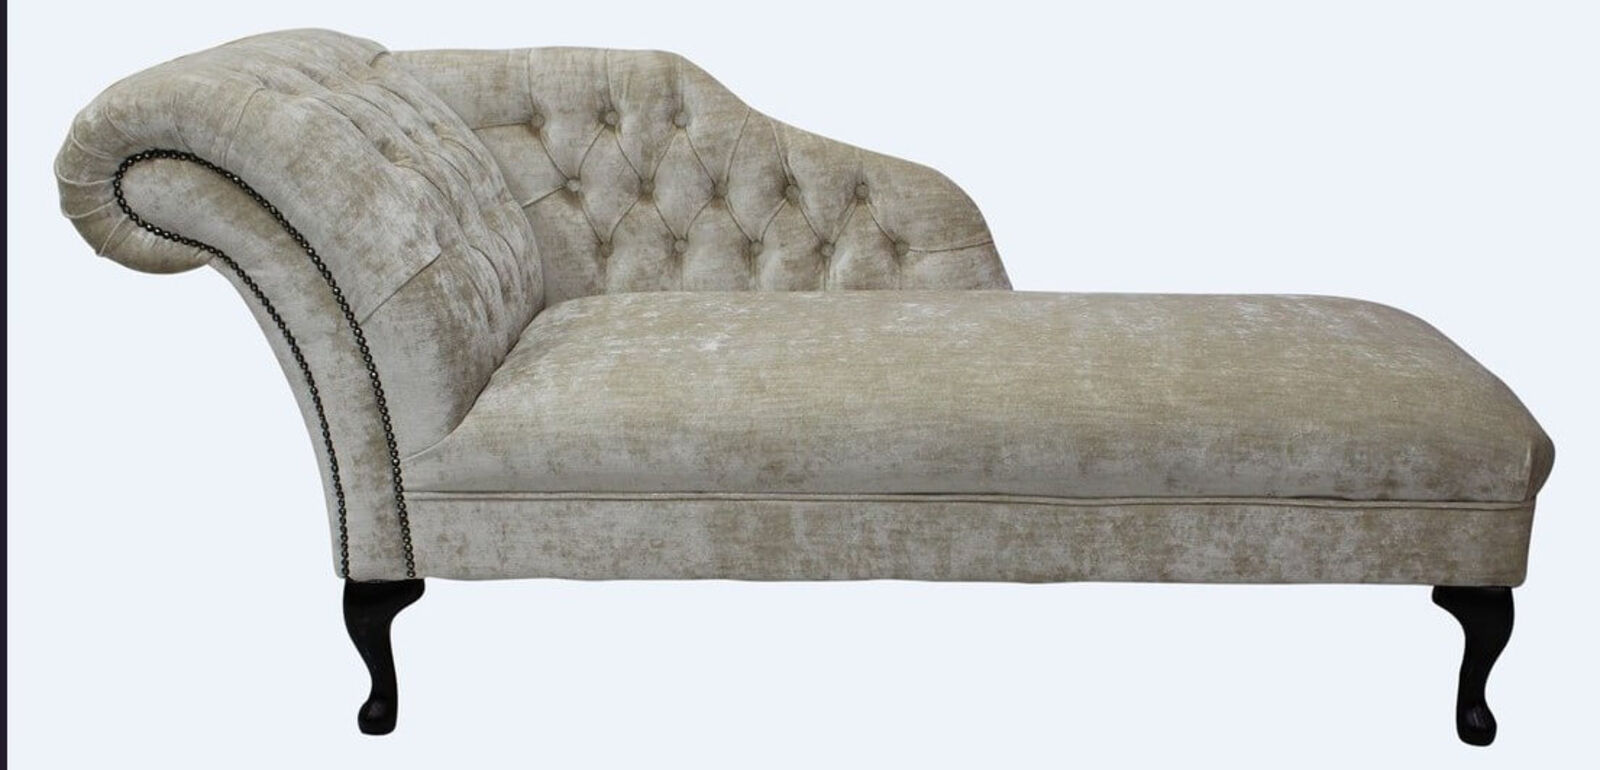 Product photograph of Chesterfield Velvet Chaise Lounge Day Bed Modena Camel Velvet In Left Hand from Designer Sofas 4U